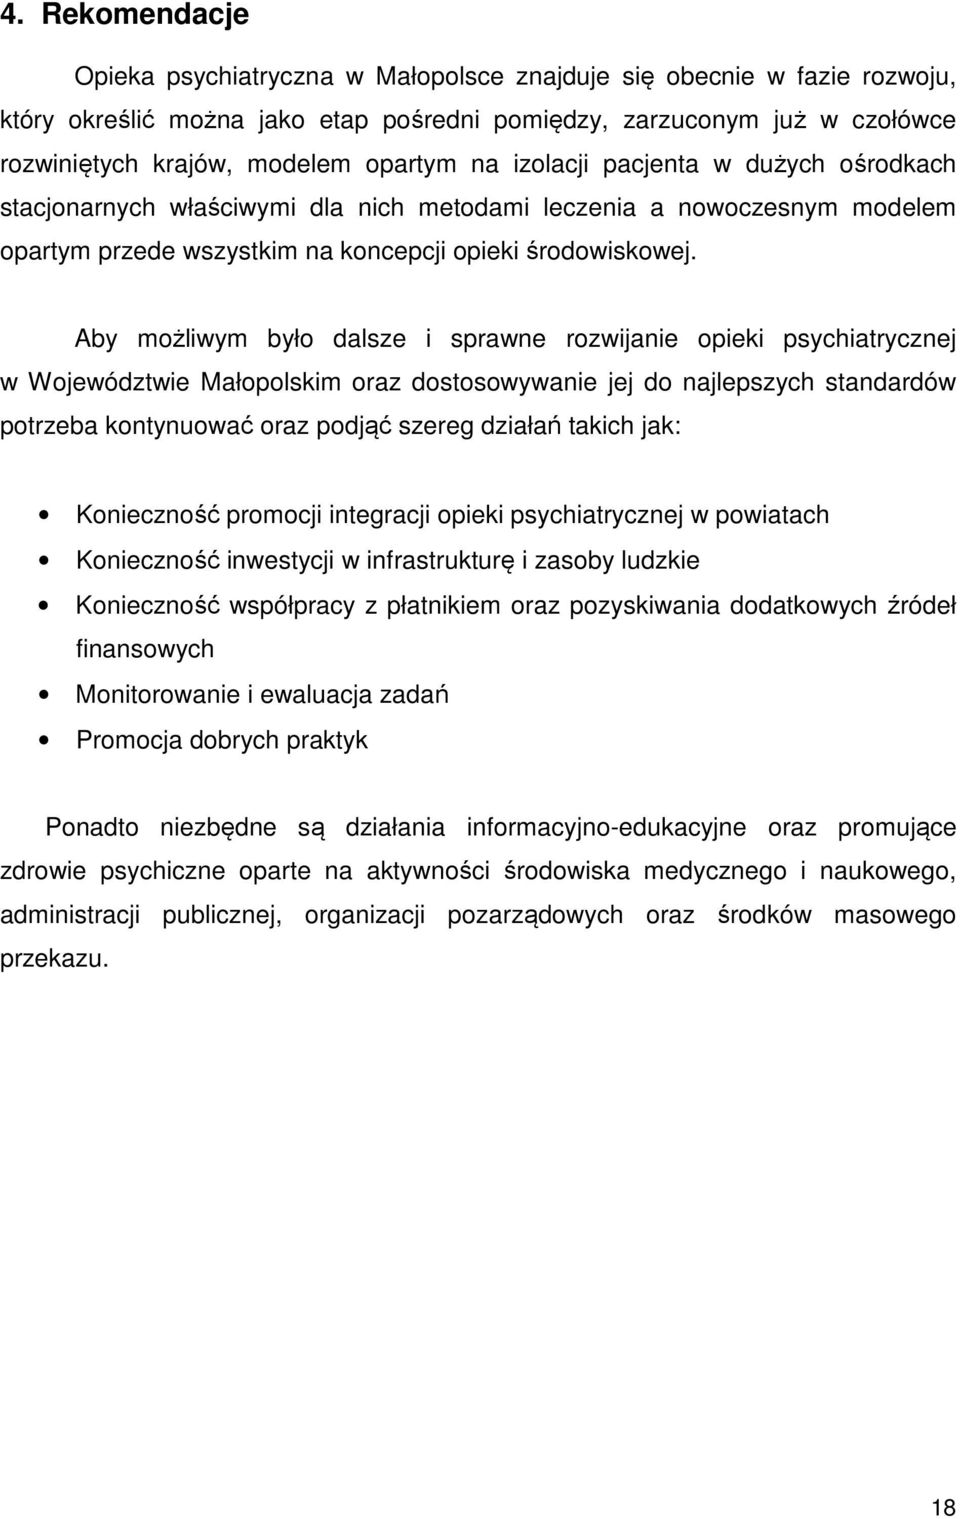 Aby możliwym było dalsze i sprawne rozwijanie opieki psychiatrycznej w Województwie Małopolskim oraz dostosowywanie jej do najlepszych standardów potrzeba kontynuować oraz podjąć szereg działań